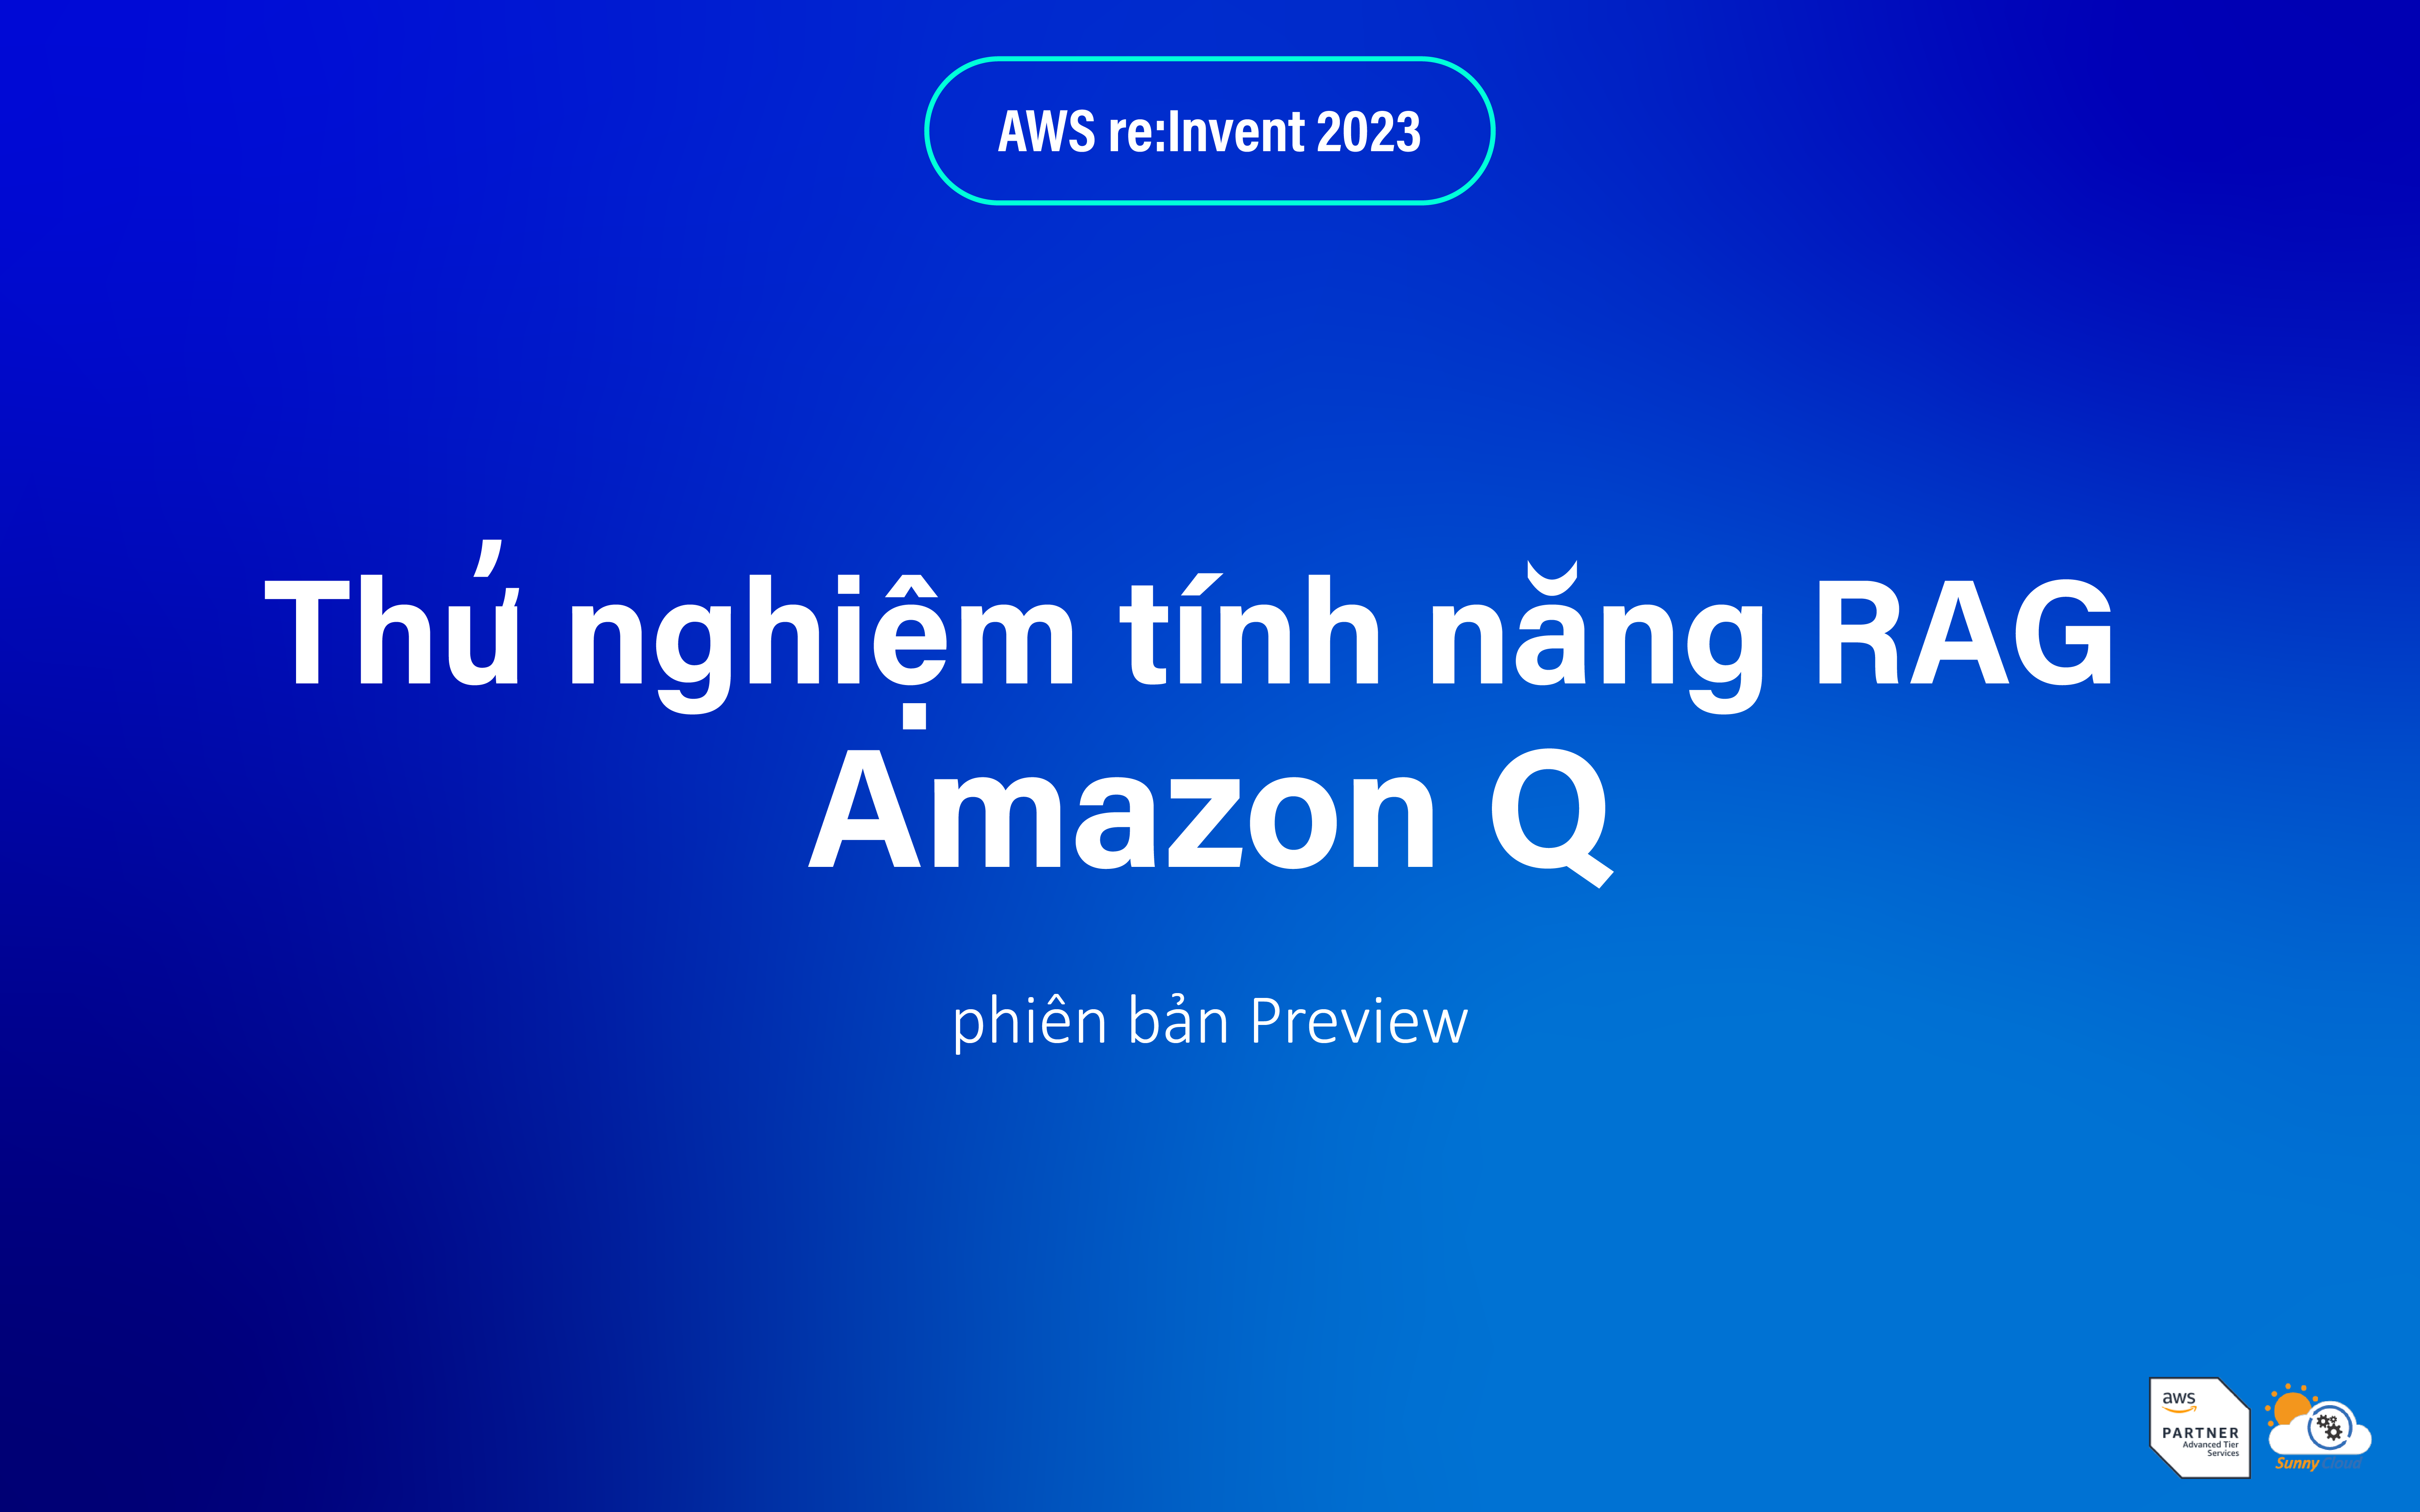 Thử nghiệm tính năng RAG trên Amazon Q (phiên bản Preview)